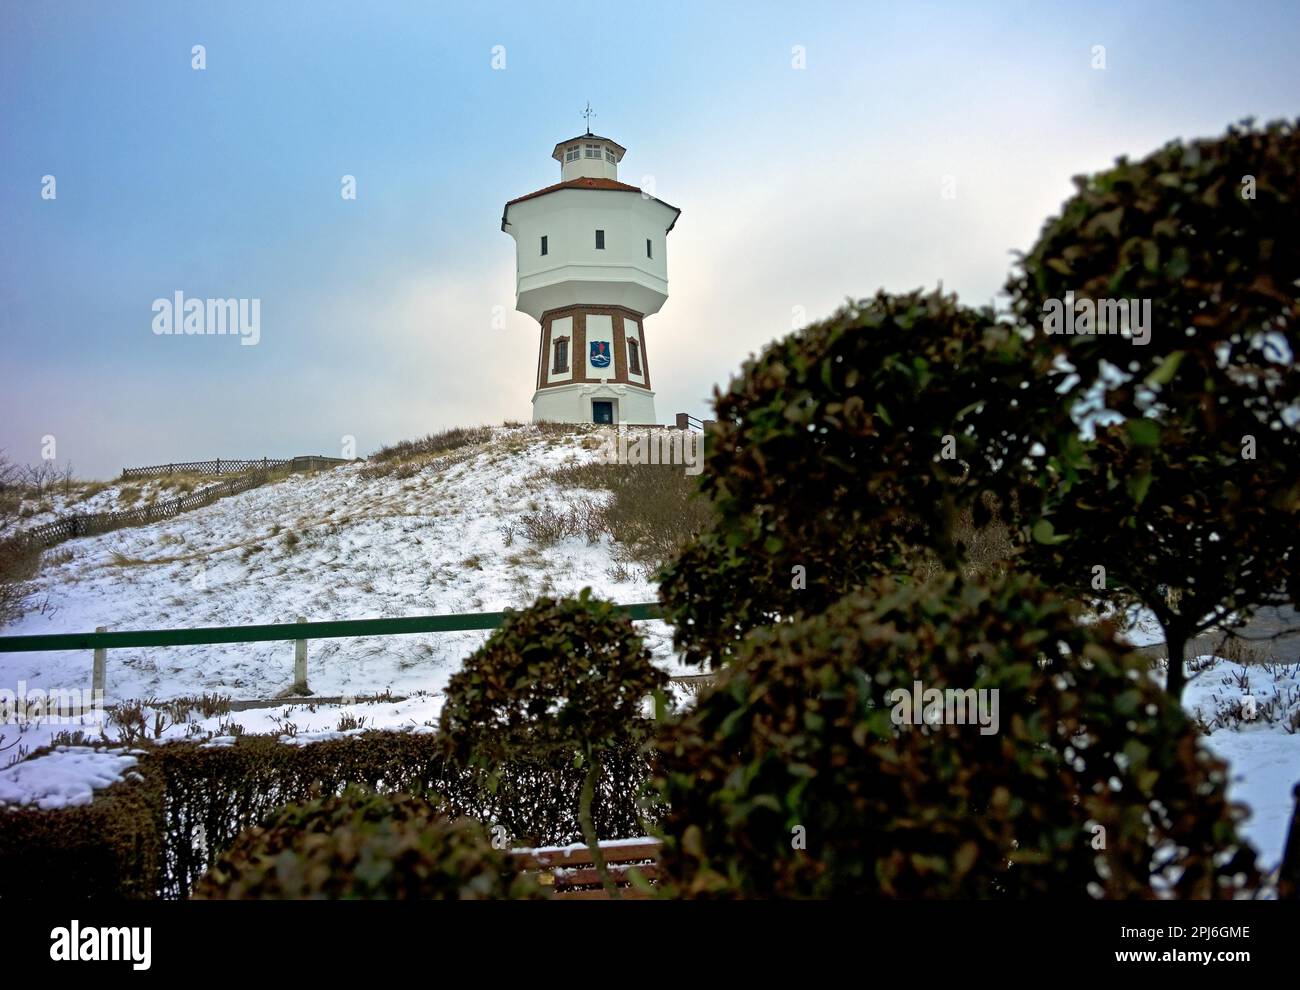 Wasserturm im Winter auf der Insel Langeoog, Ostfriesien, Bezirk Wittmund, Deutschland Stockfoto